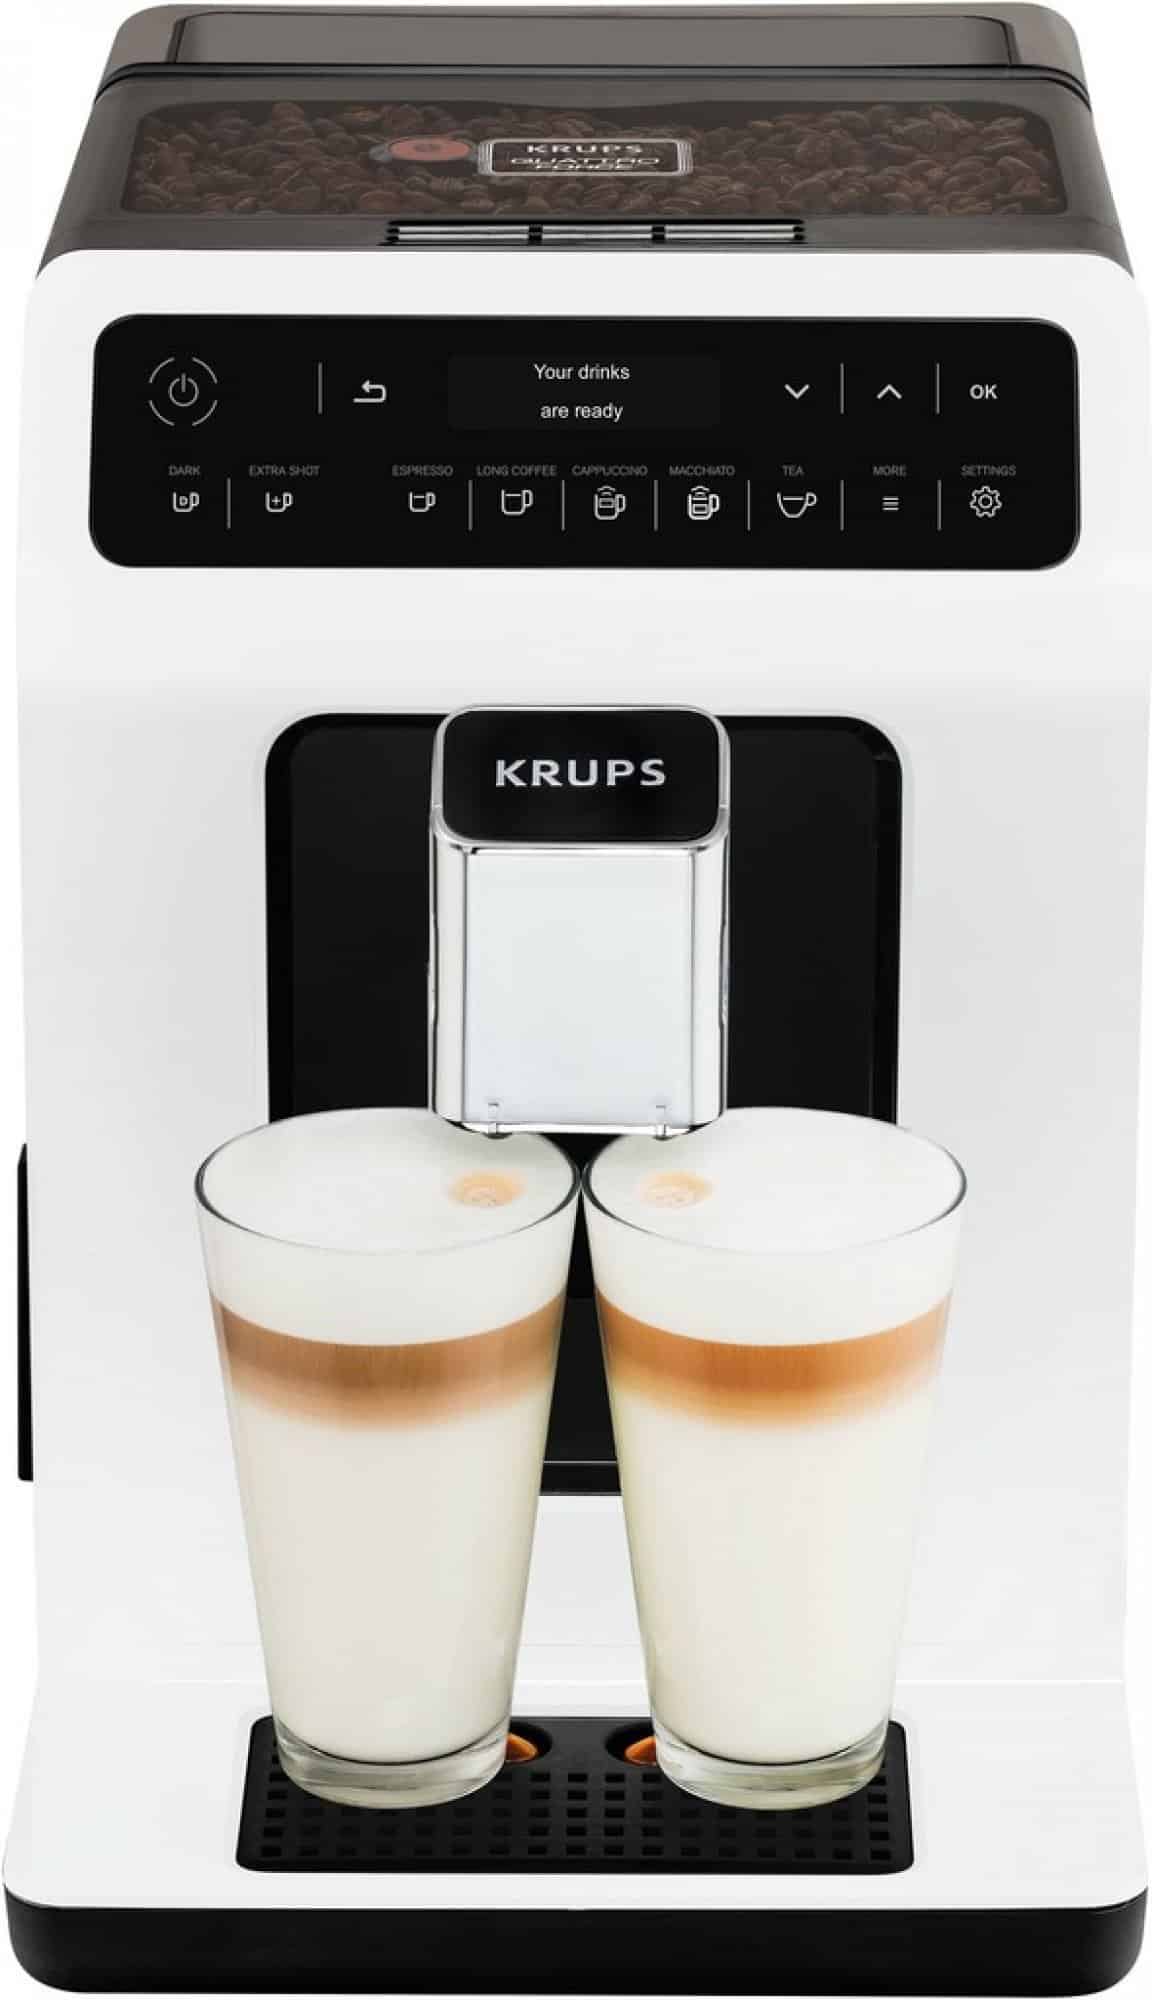 Automatický kávovar na espresso Krups Evidence pro přípravu dokonalé kávy.